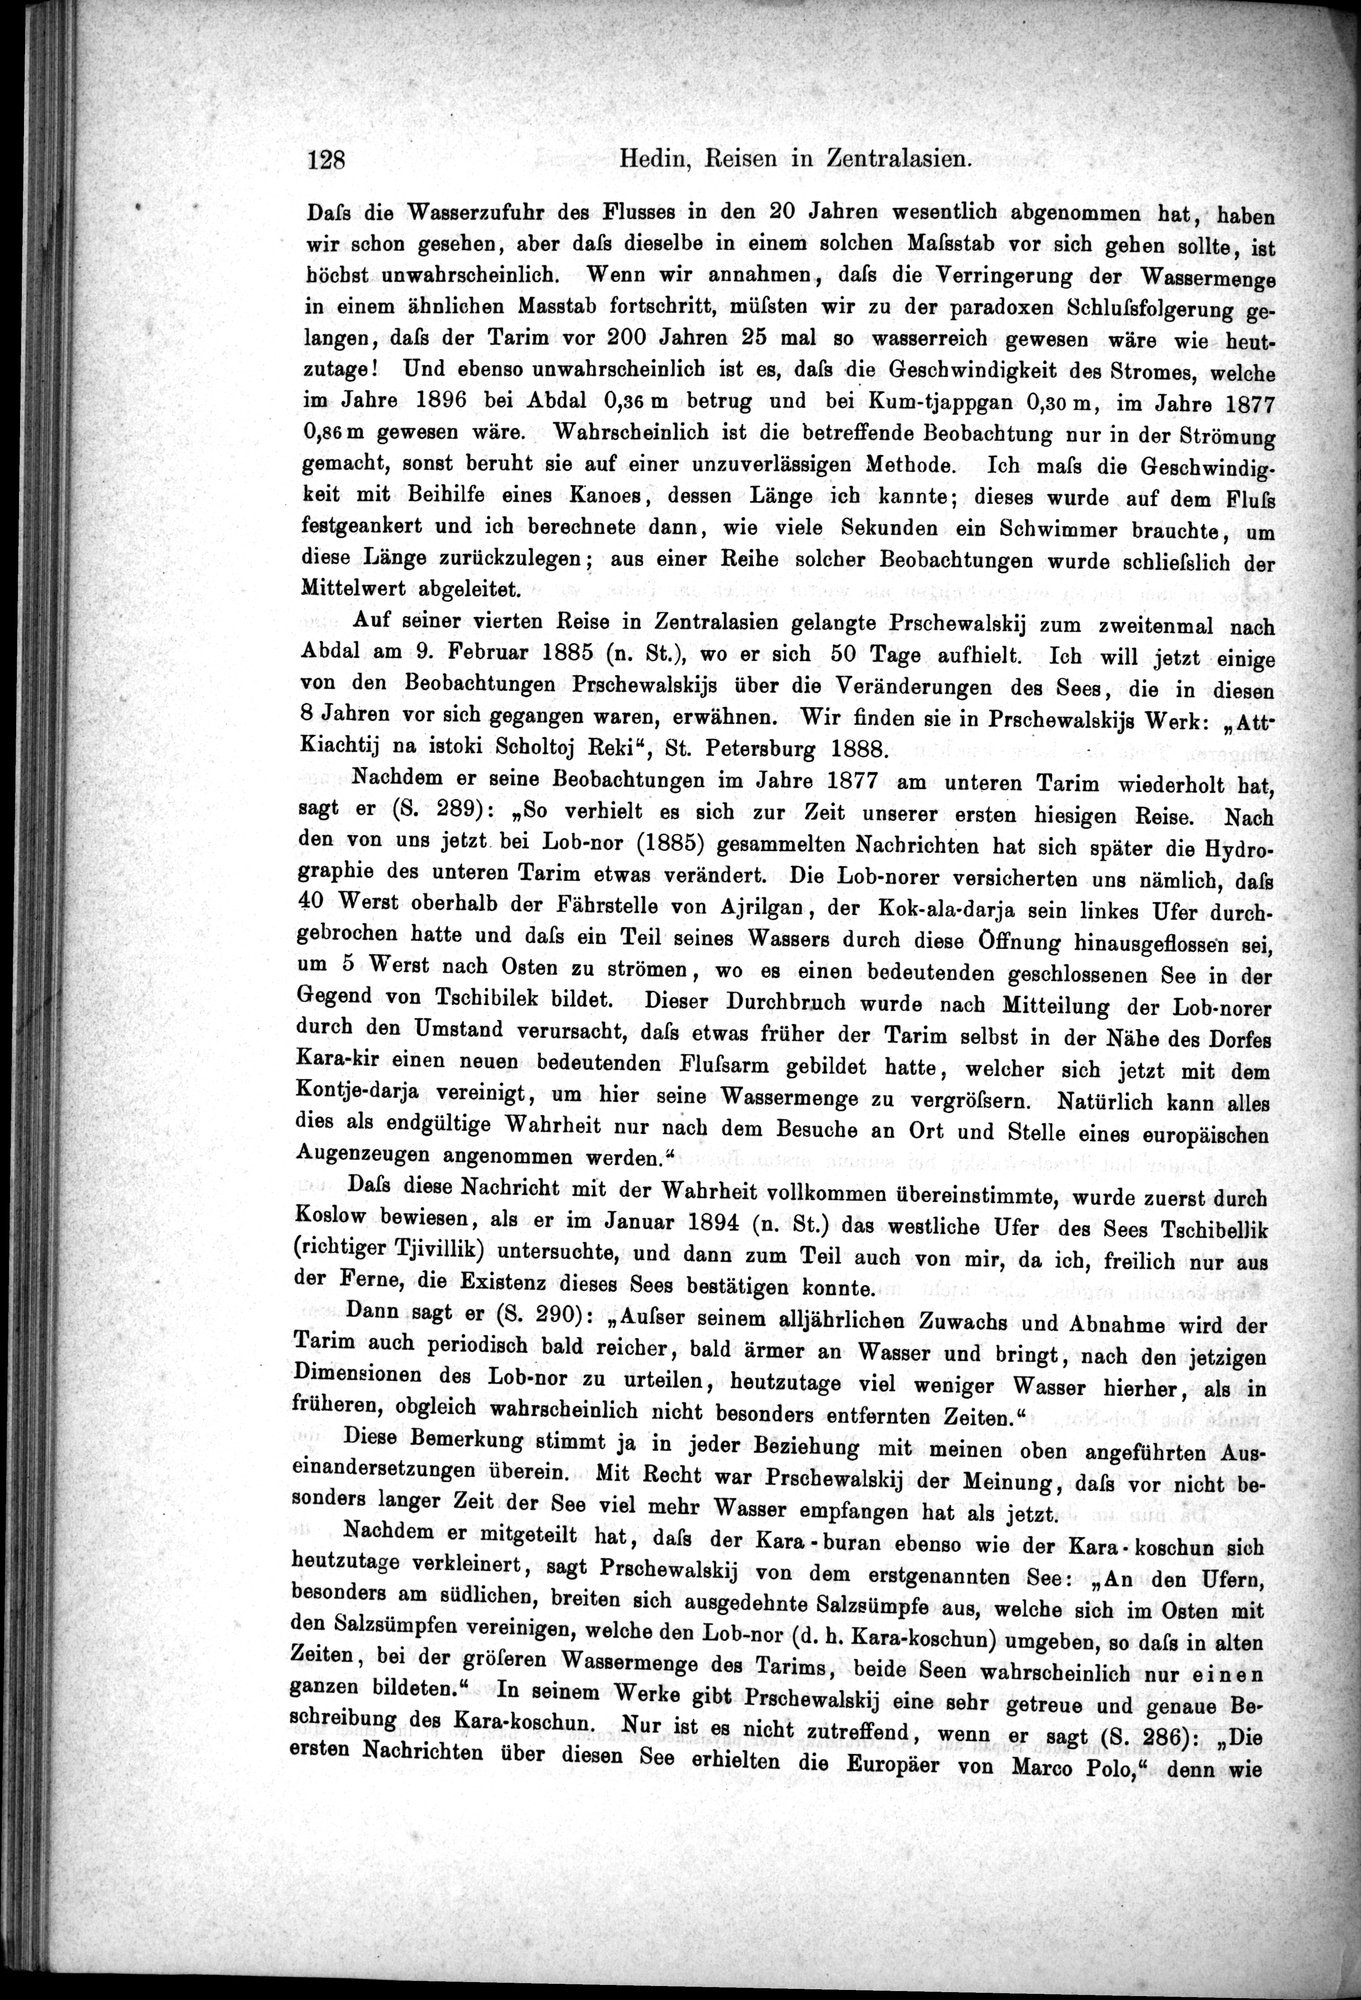 Die Geographische-Wissenschaftlichen Ergebnisse meiner Reisen in Zentralasien, 1894-1897 : vol.1 / Page 140 (Grayscale High Resolution Image)